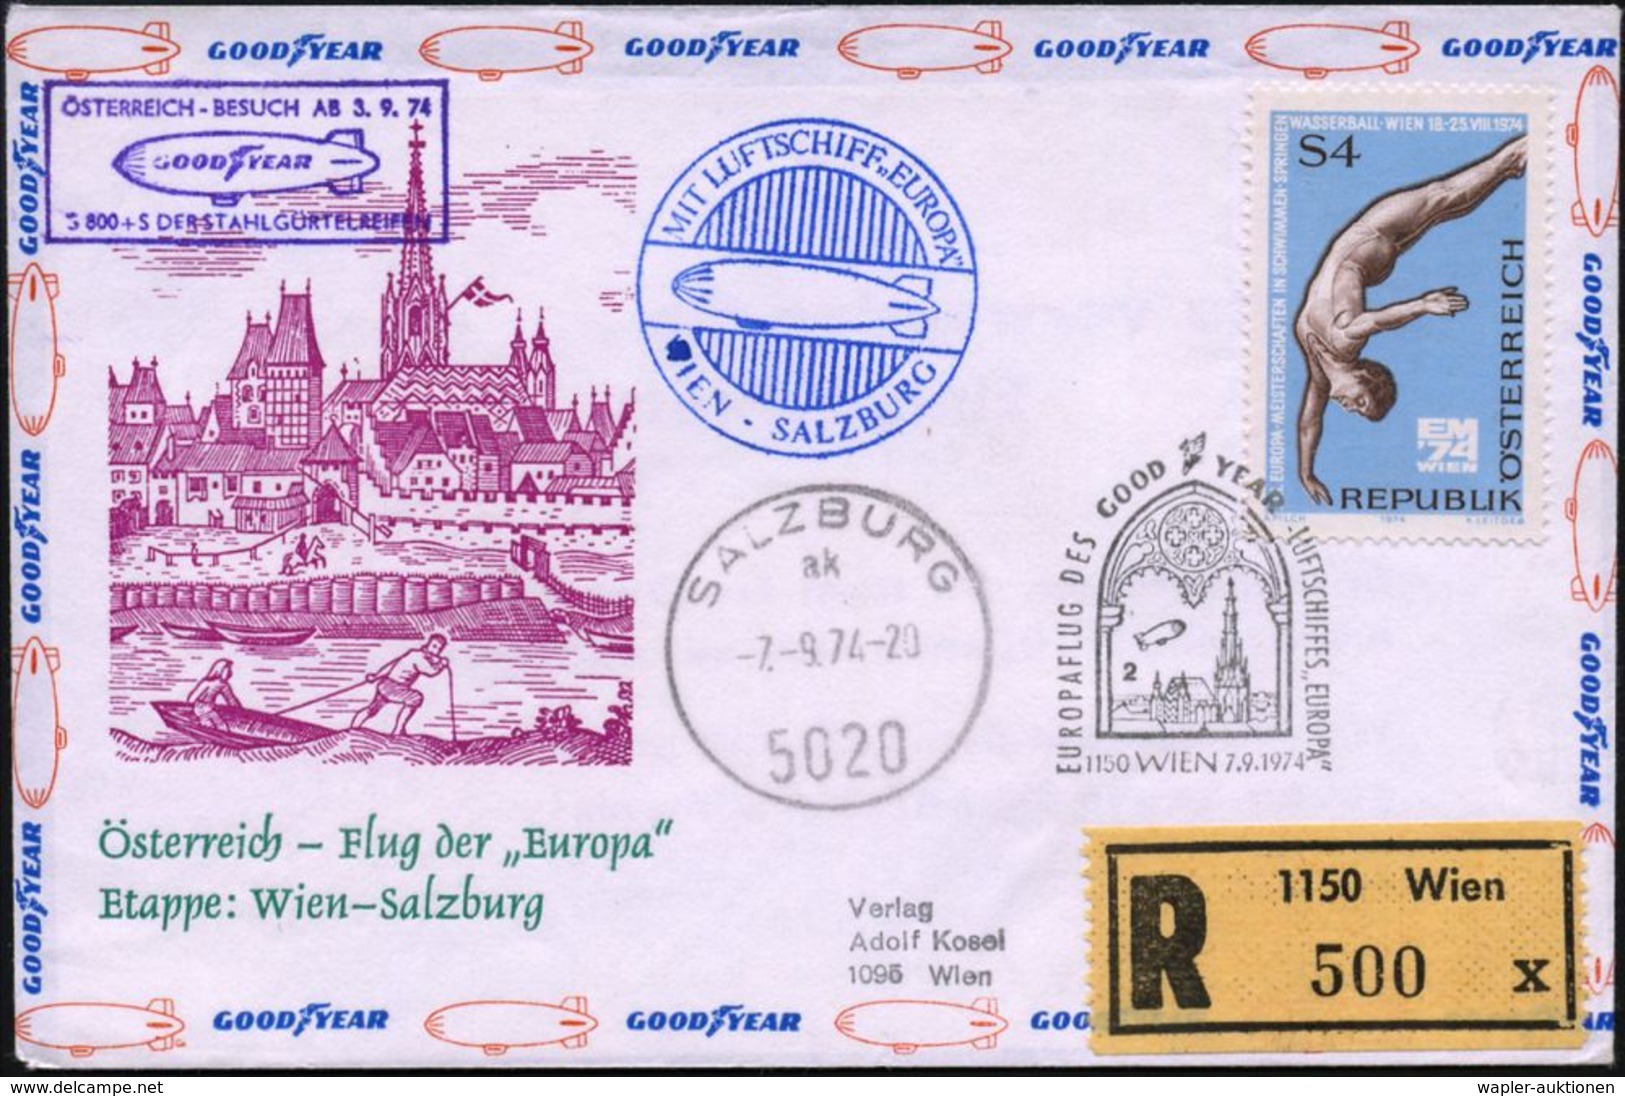 LUFTSCHIFFE (OHNE ZEPPELIN) : ÖSTERREICH 1974 (7.9.) SSt.: 1150 WIEN/EUROPAFLUG DES GOODYEAR-LUFTSCHIFFES "EUROPA" (Luft - Zeppeline